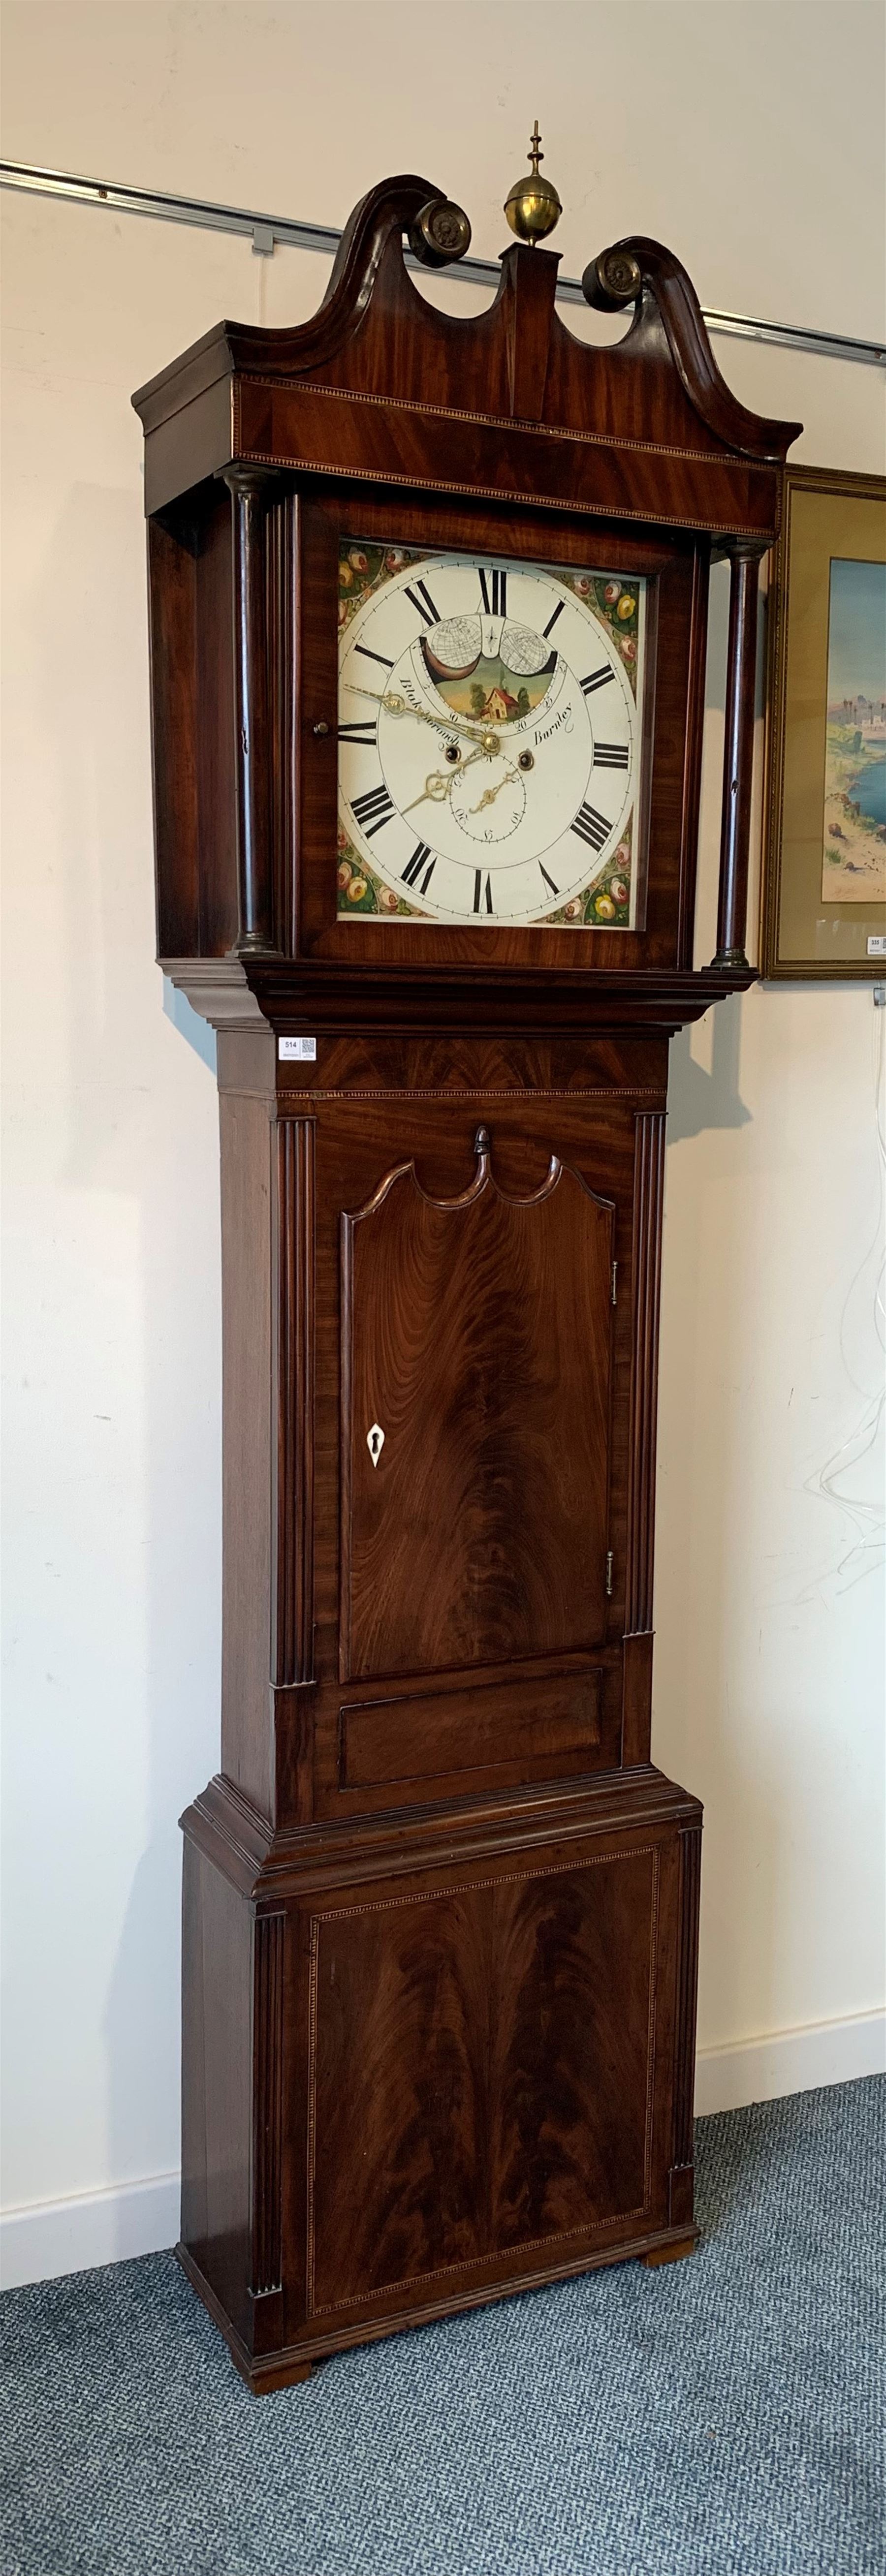 Late Georgian figured mahogany longcase clock - Image 2 of 4